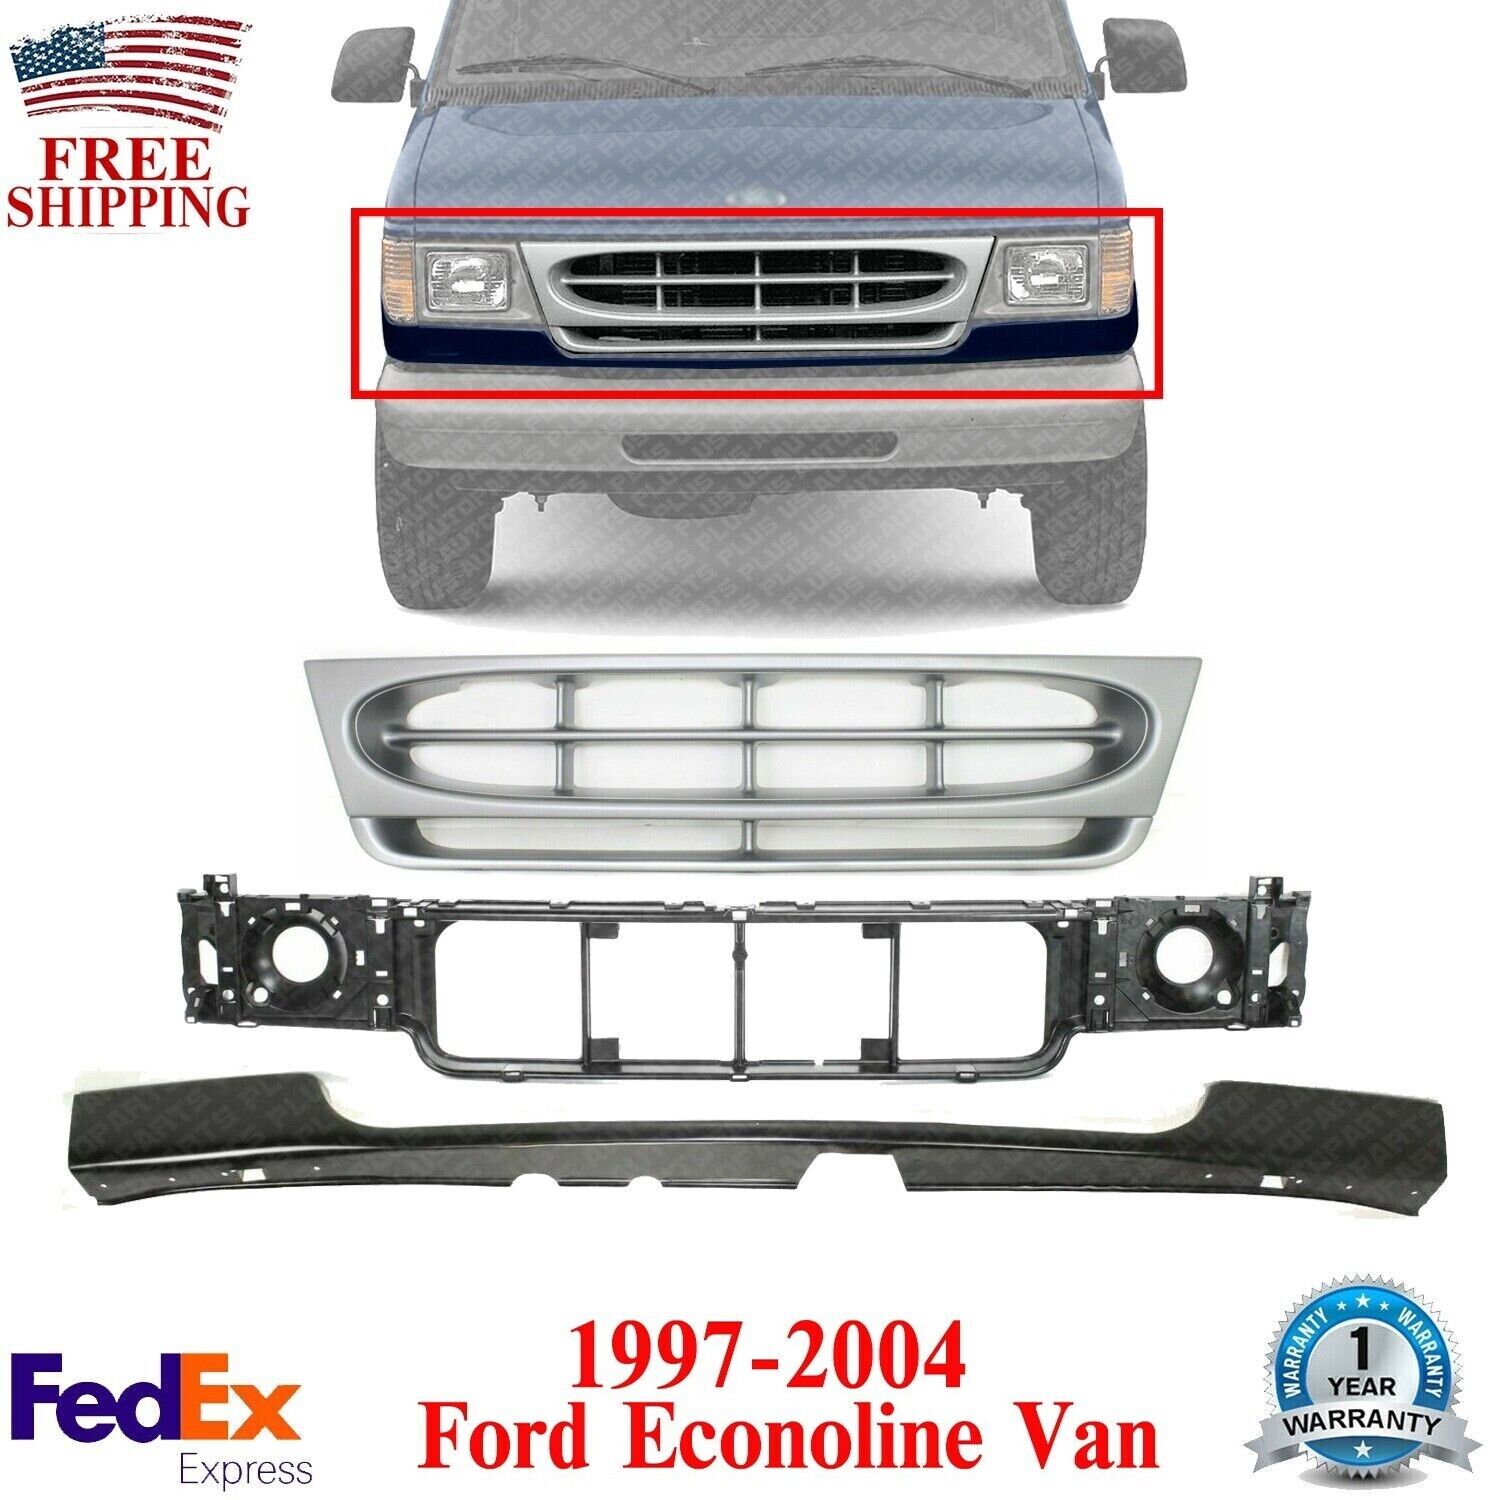 Front Grille Assembly + Header Panel + Filler For 1997-2004 Ford Econoline Van